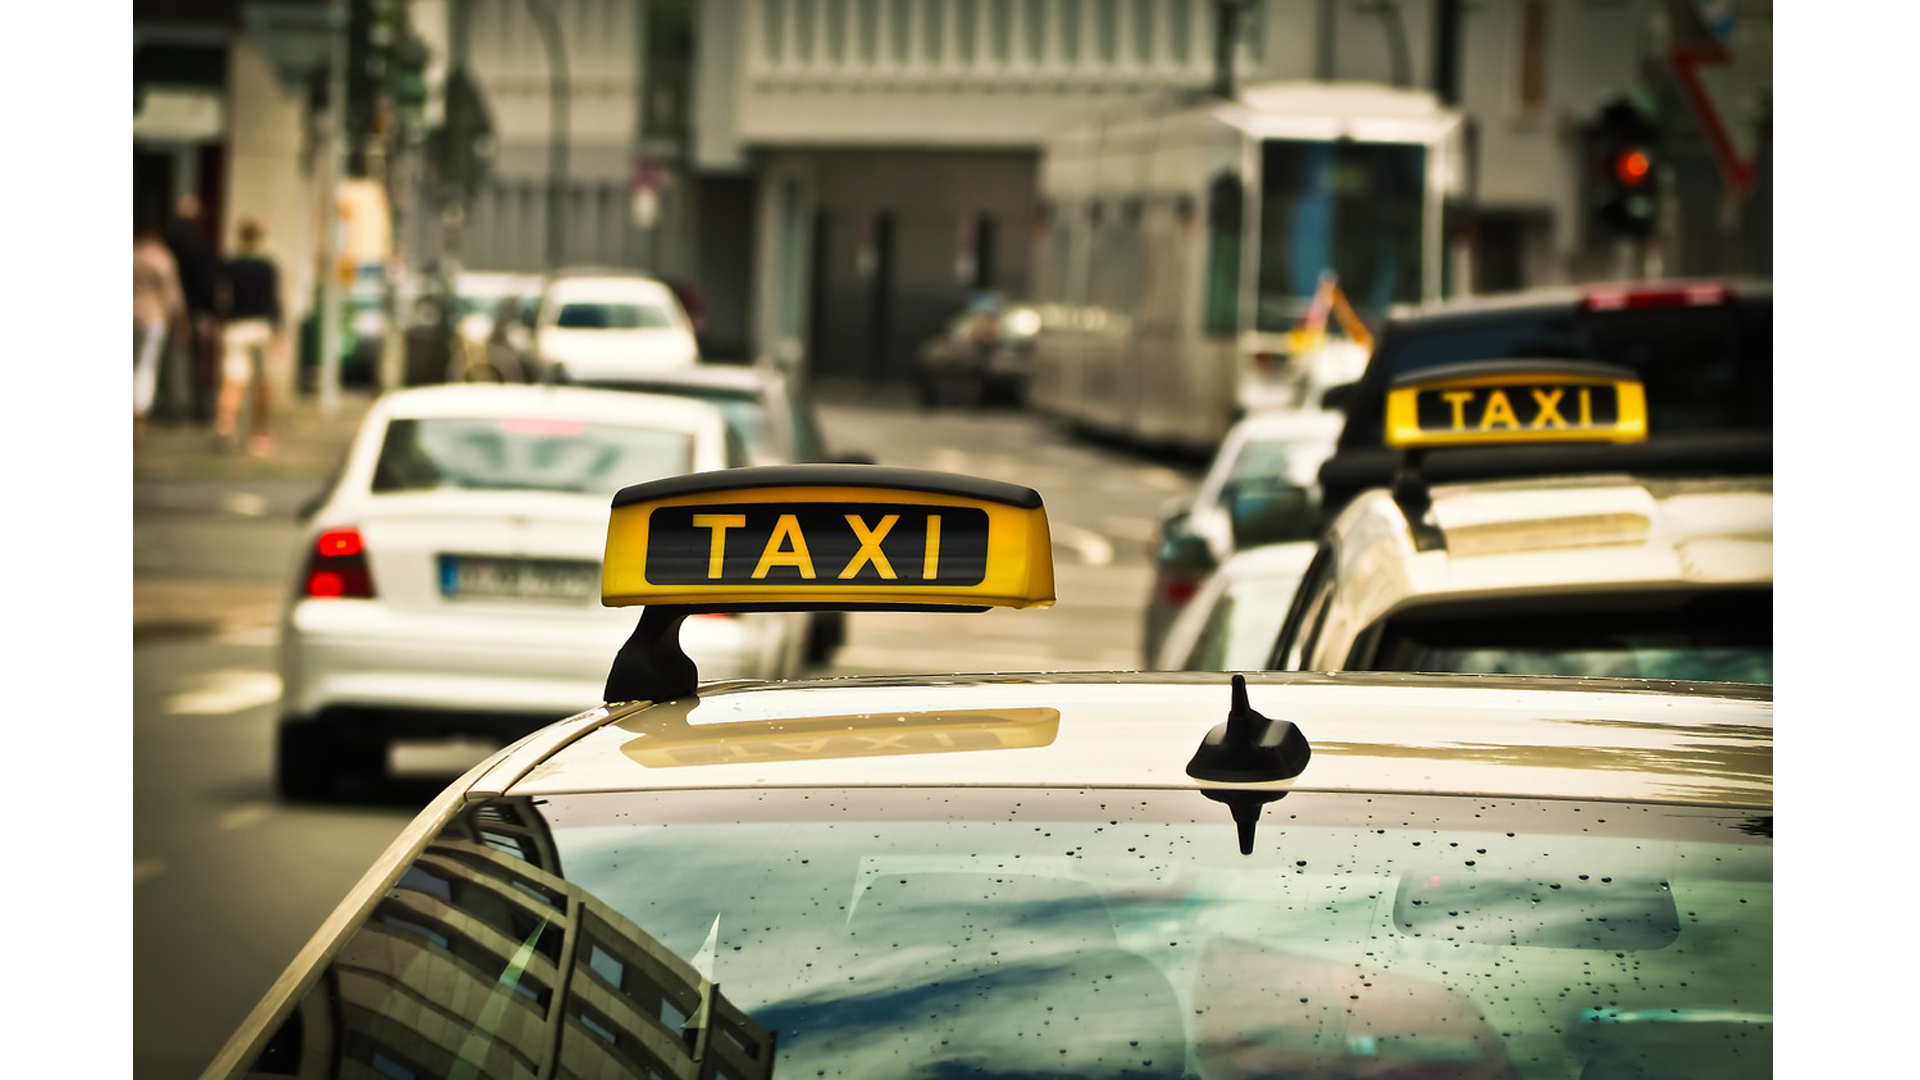 Taksi sürücülərinin vergi və sosial sığorta öhdəlikləri